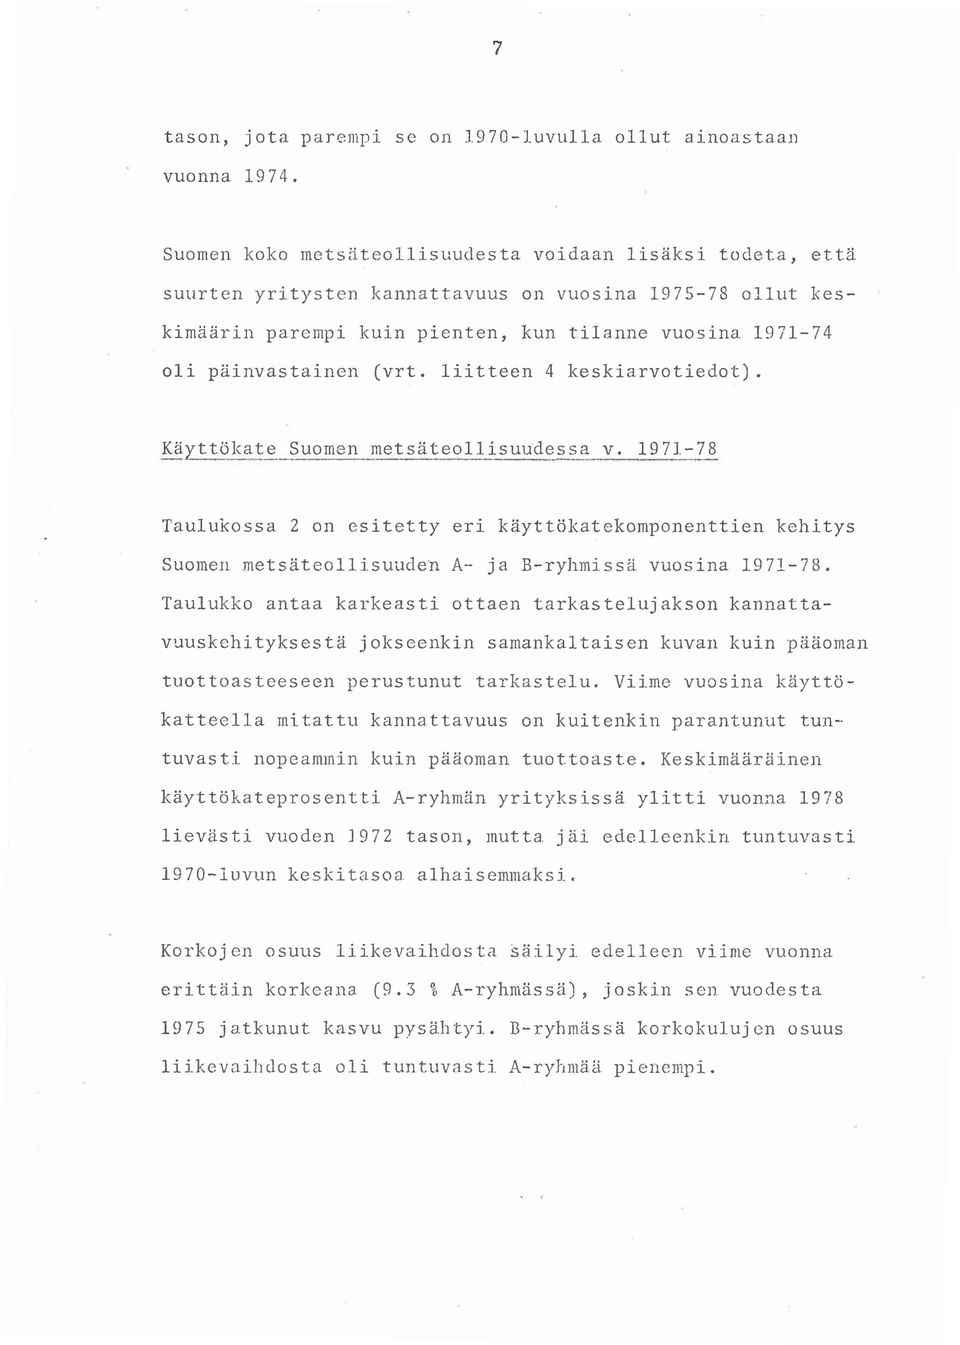 ltteen 4 keskarvotedot). Käyttökate Suomen metsäteollsu~dessa v. 97-78 Taulukossa 2 on estetty er käyttökatekomponentten kehtys Suomen metsäteollsuuden A- ja B-ryhmssä vuosna 97-78.